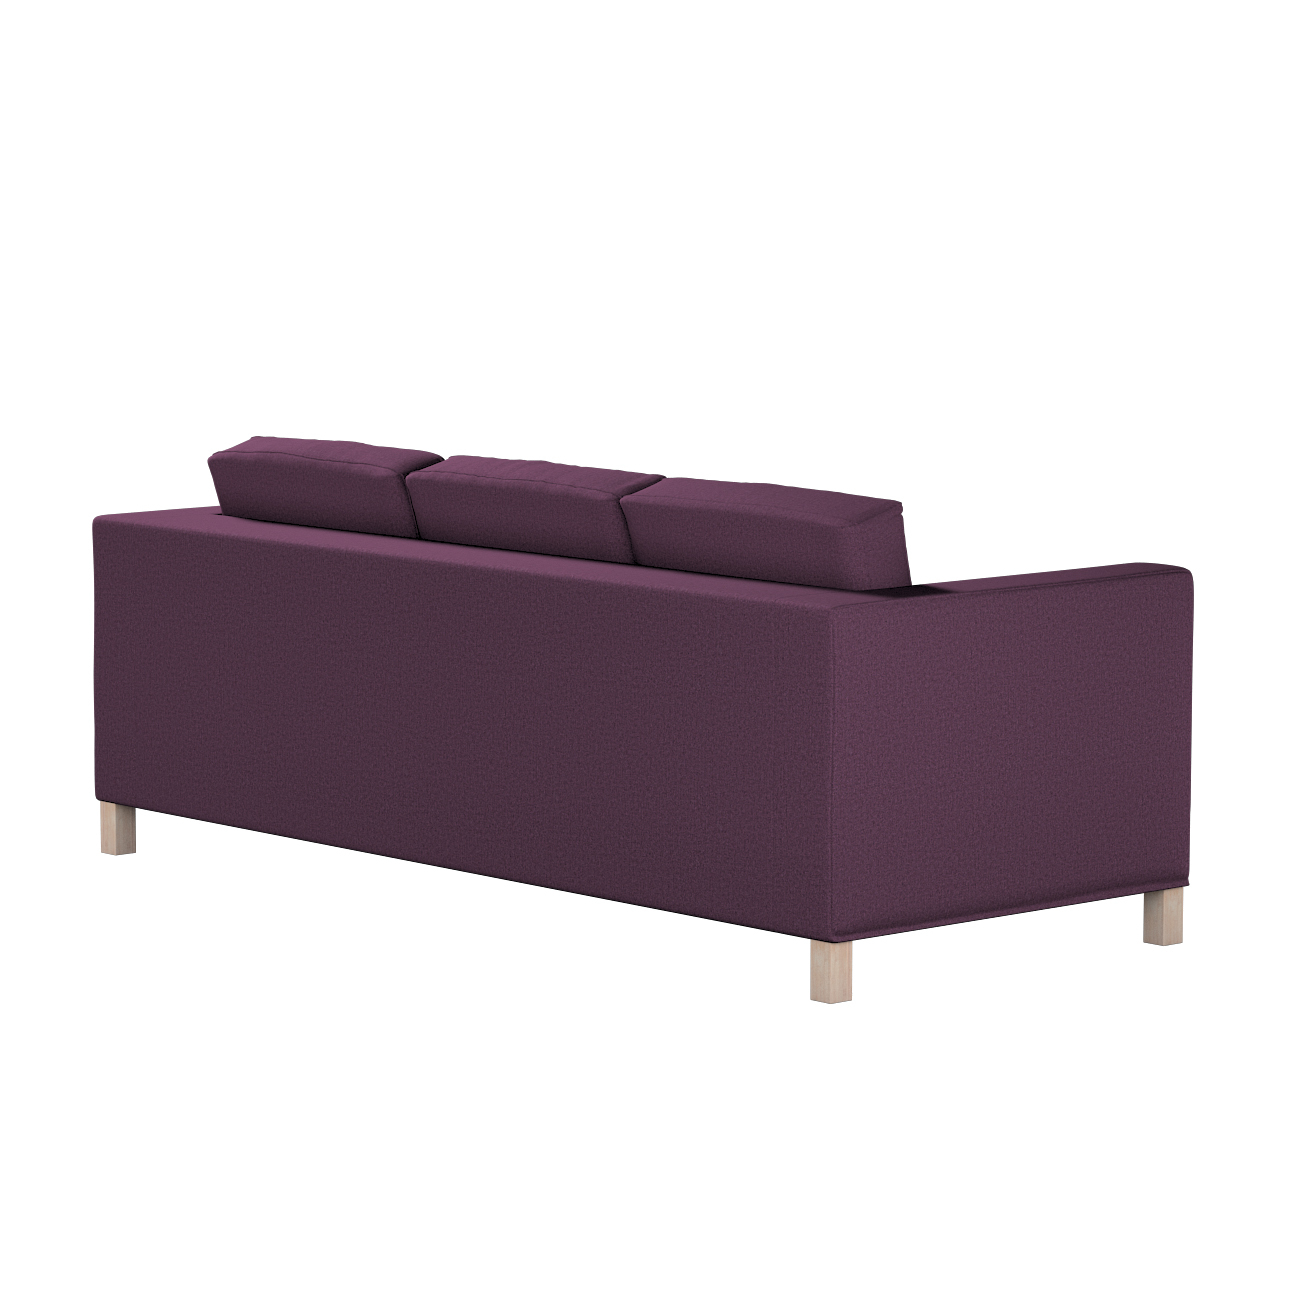 Bezug für Karlanda 3-Sitzer Sofa nicht ausklappbar, kurz, pflaume, Bezug fü günstig online kaufen